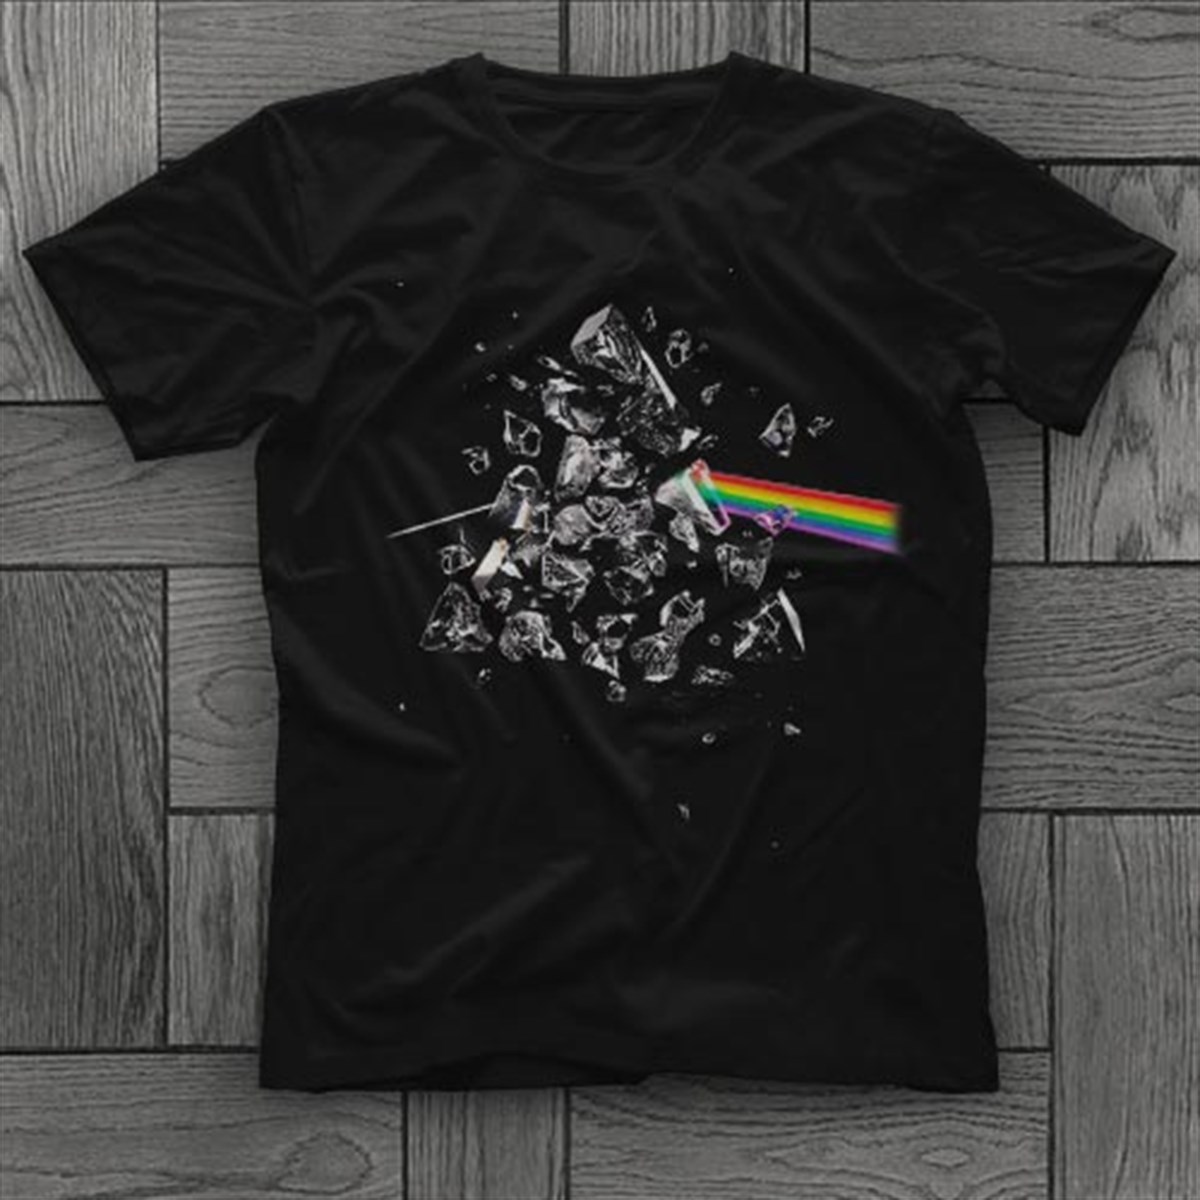 Pink Floyd T shirt,Music Band,Unisex Tshirt 36/